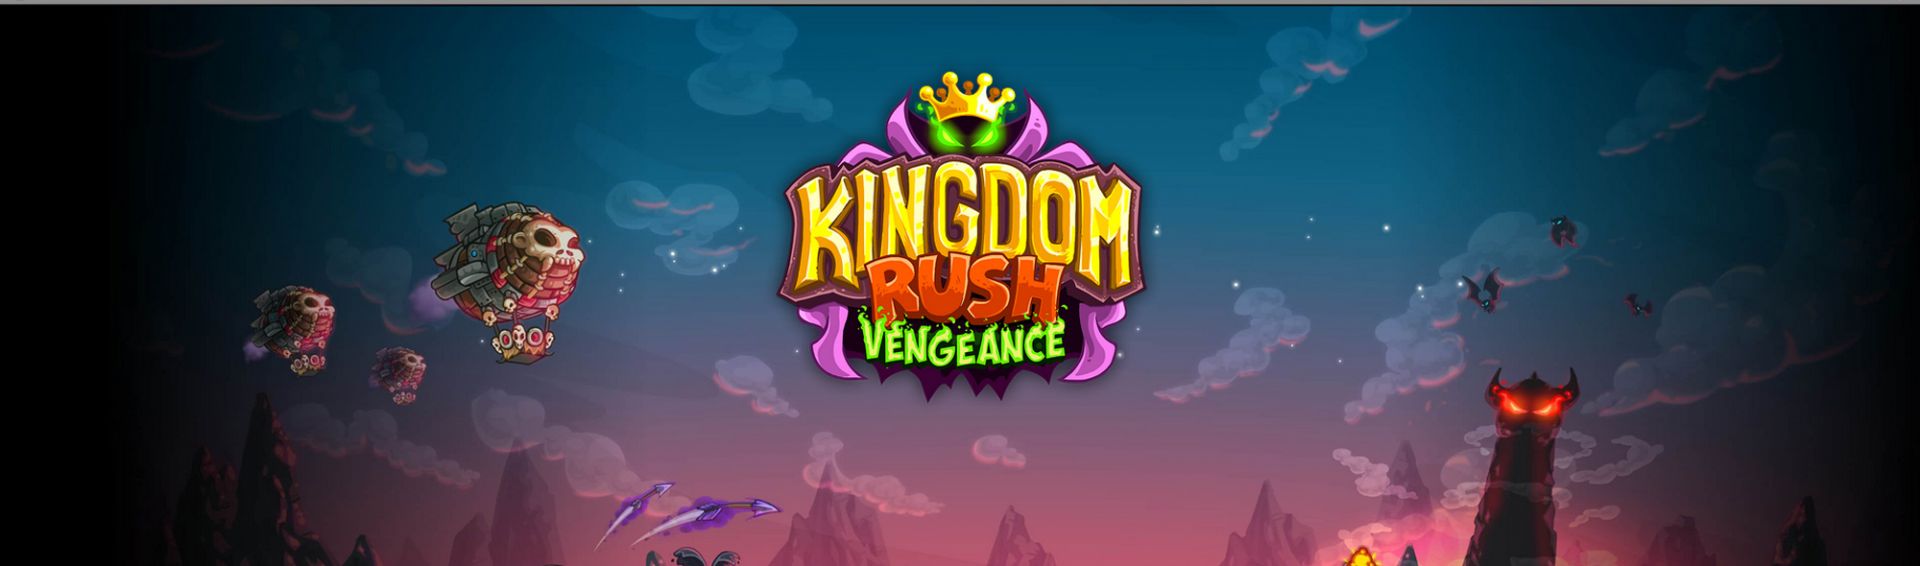 downloading Kingdom Rush Vengeance